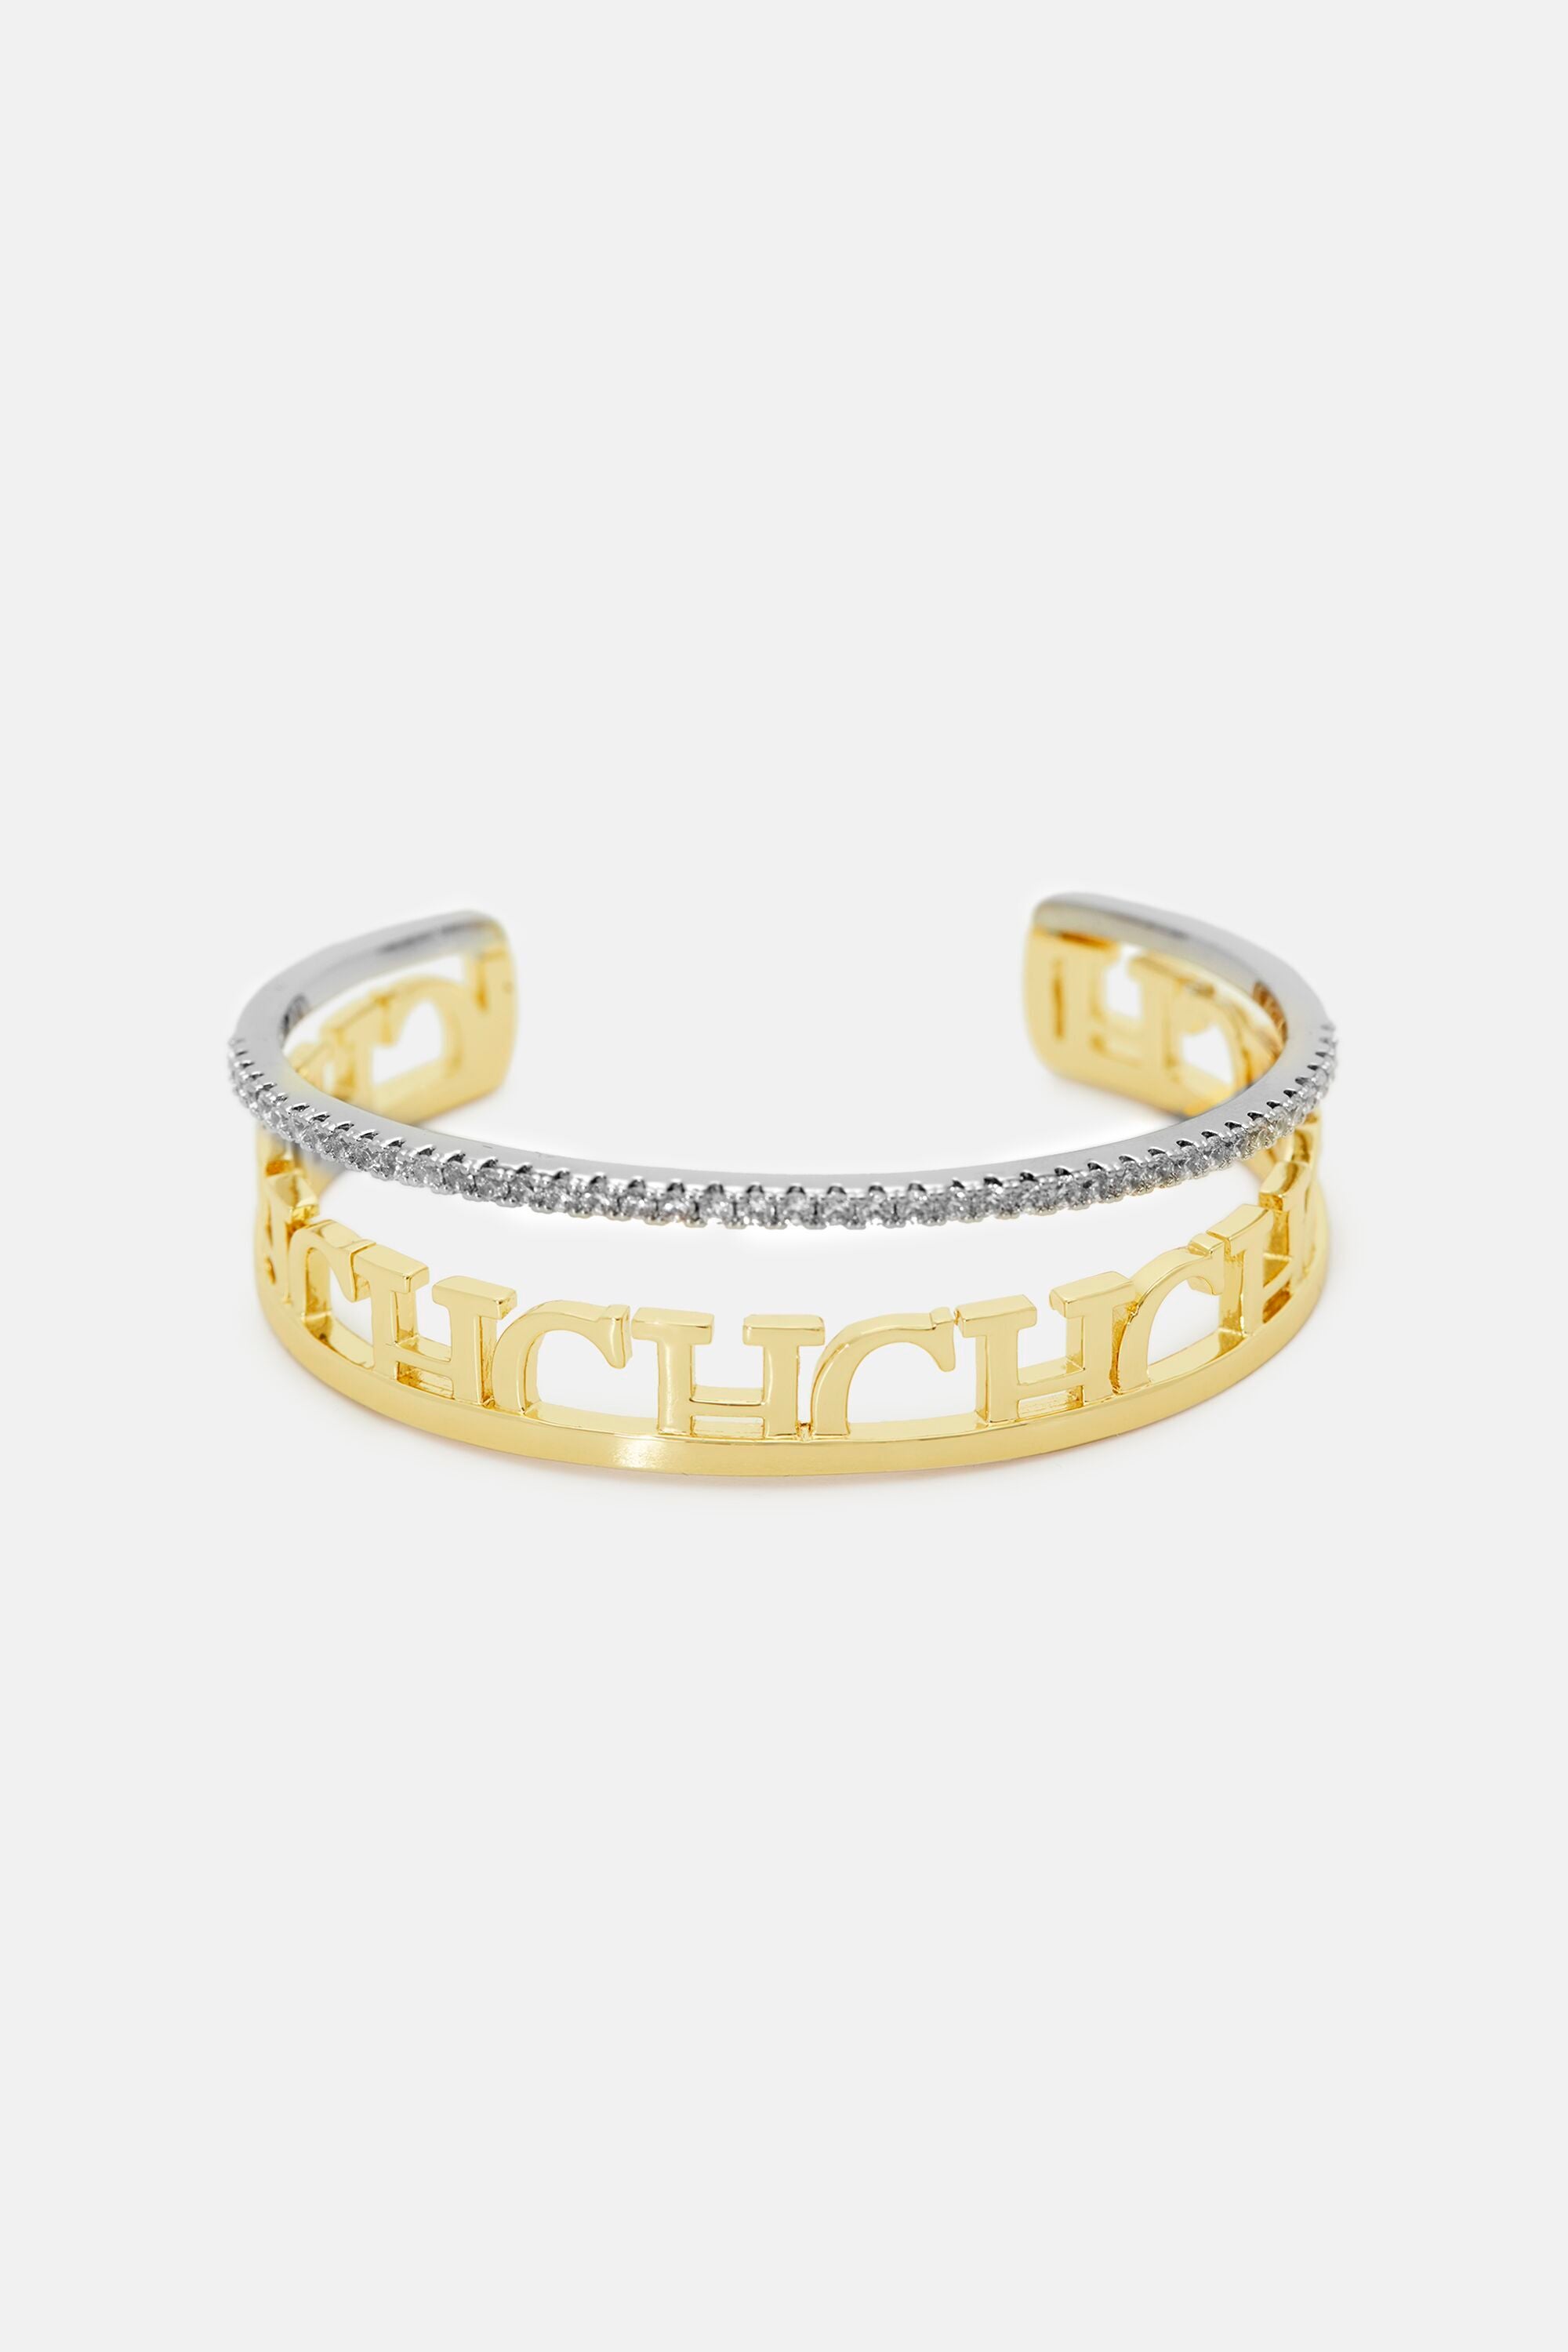 Carolina Herrera Bracelet - Jewelry